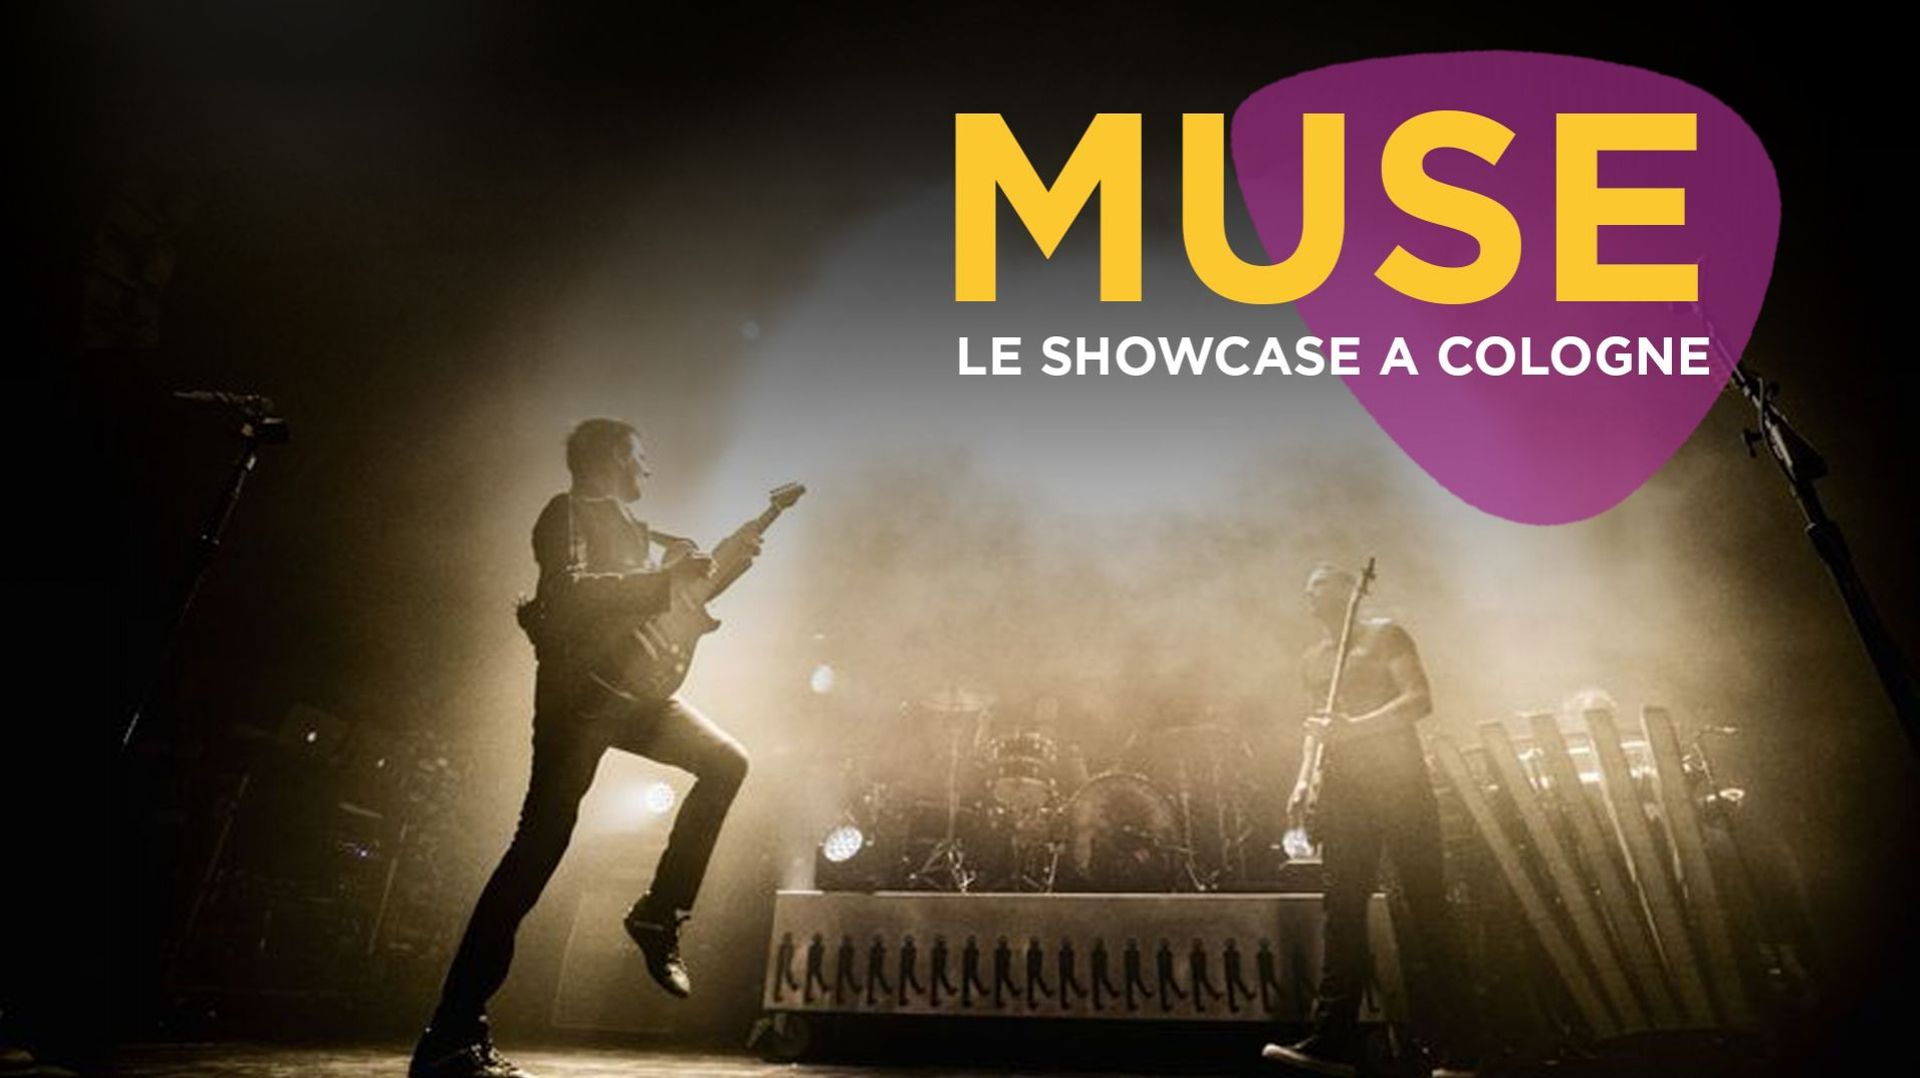 Le showcase de Muse